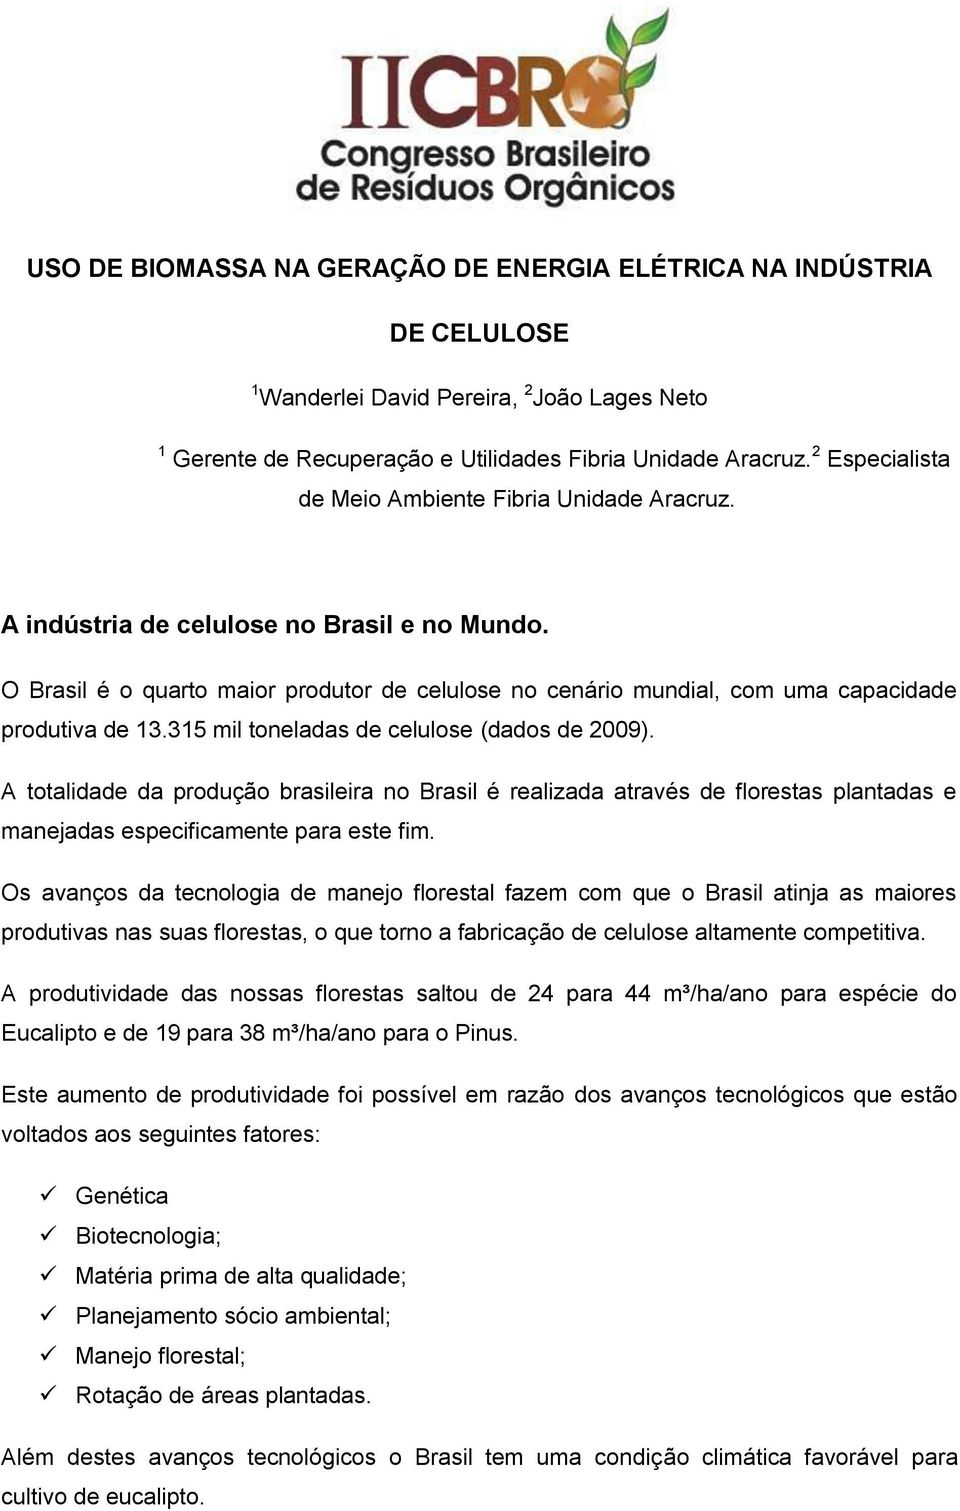 O Brasil é o quarto maior produtor de celulose no cenário mundial, com uma capacidade produtiva de 13.315 mil toneladas de celulose (dados de 2009).